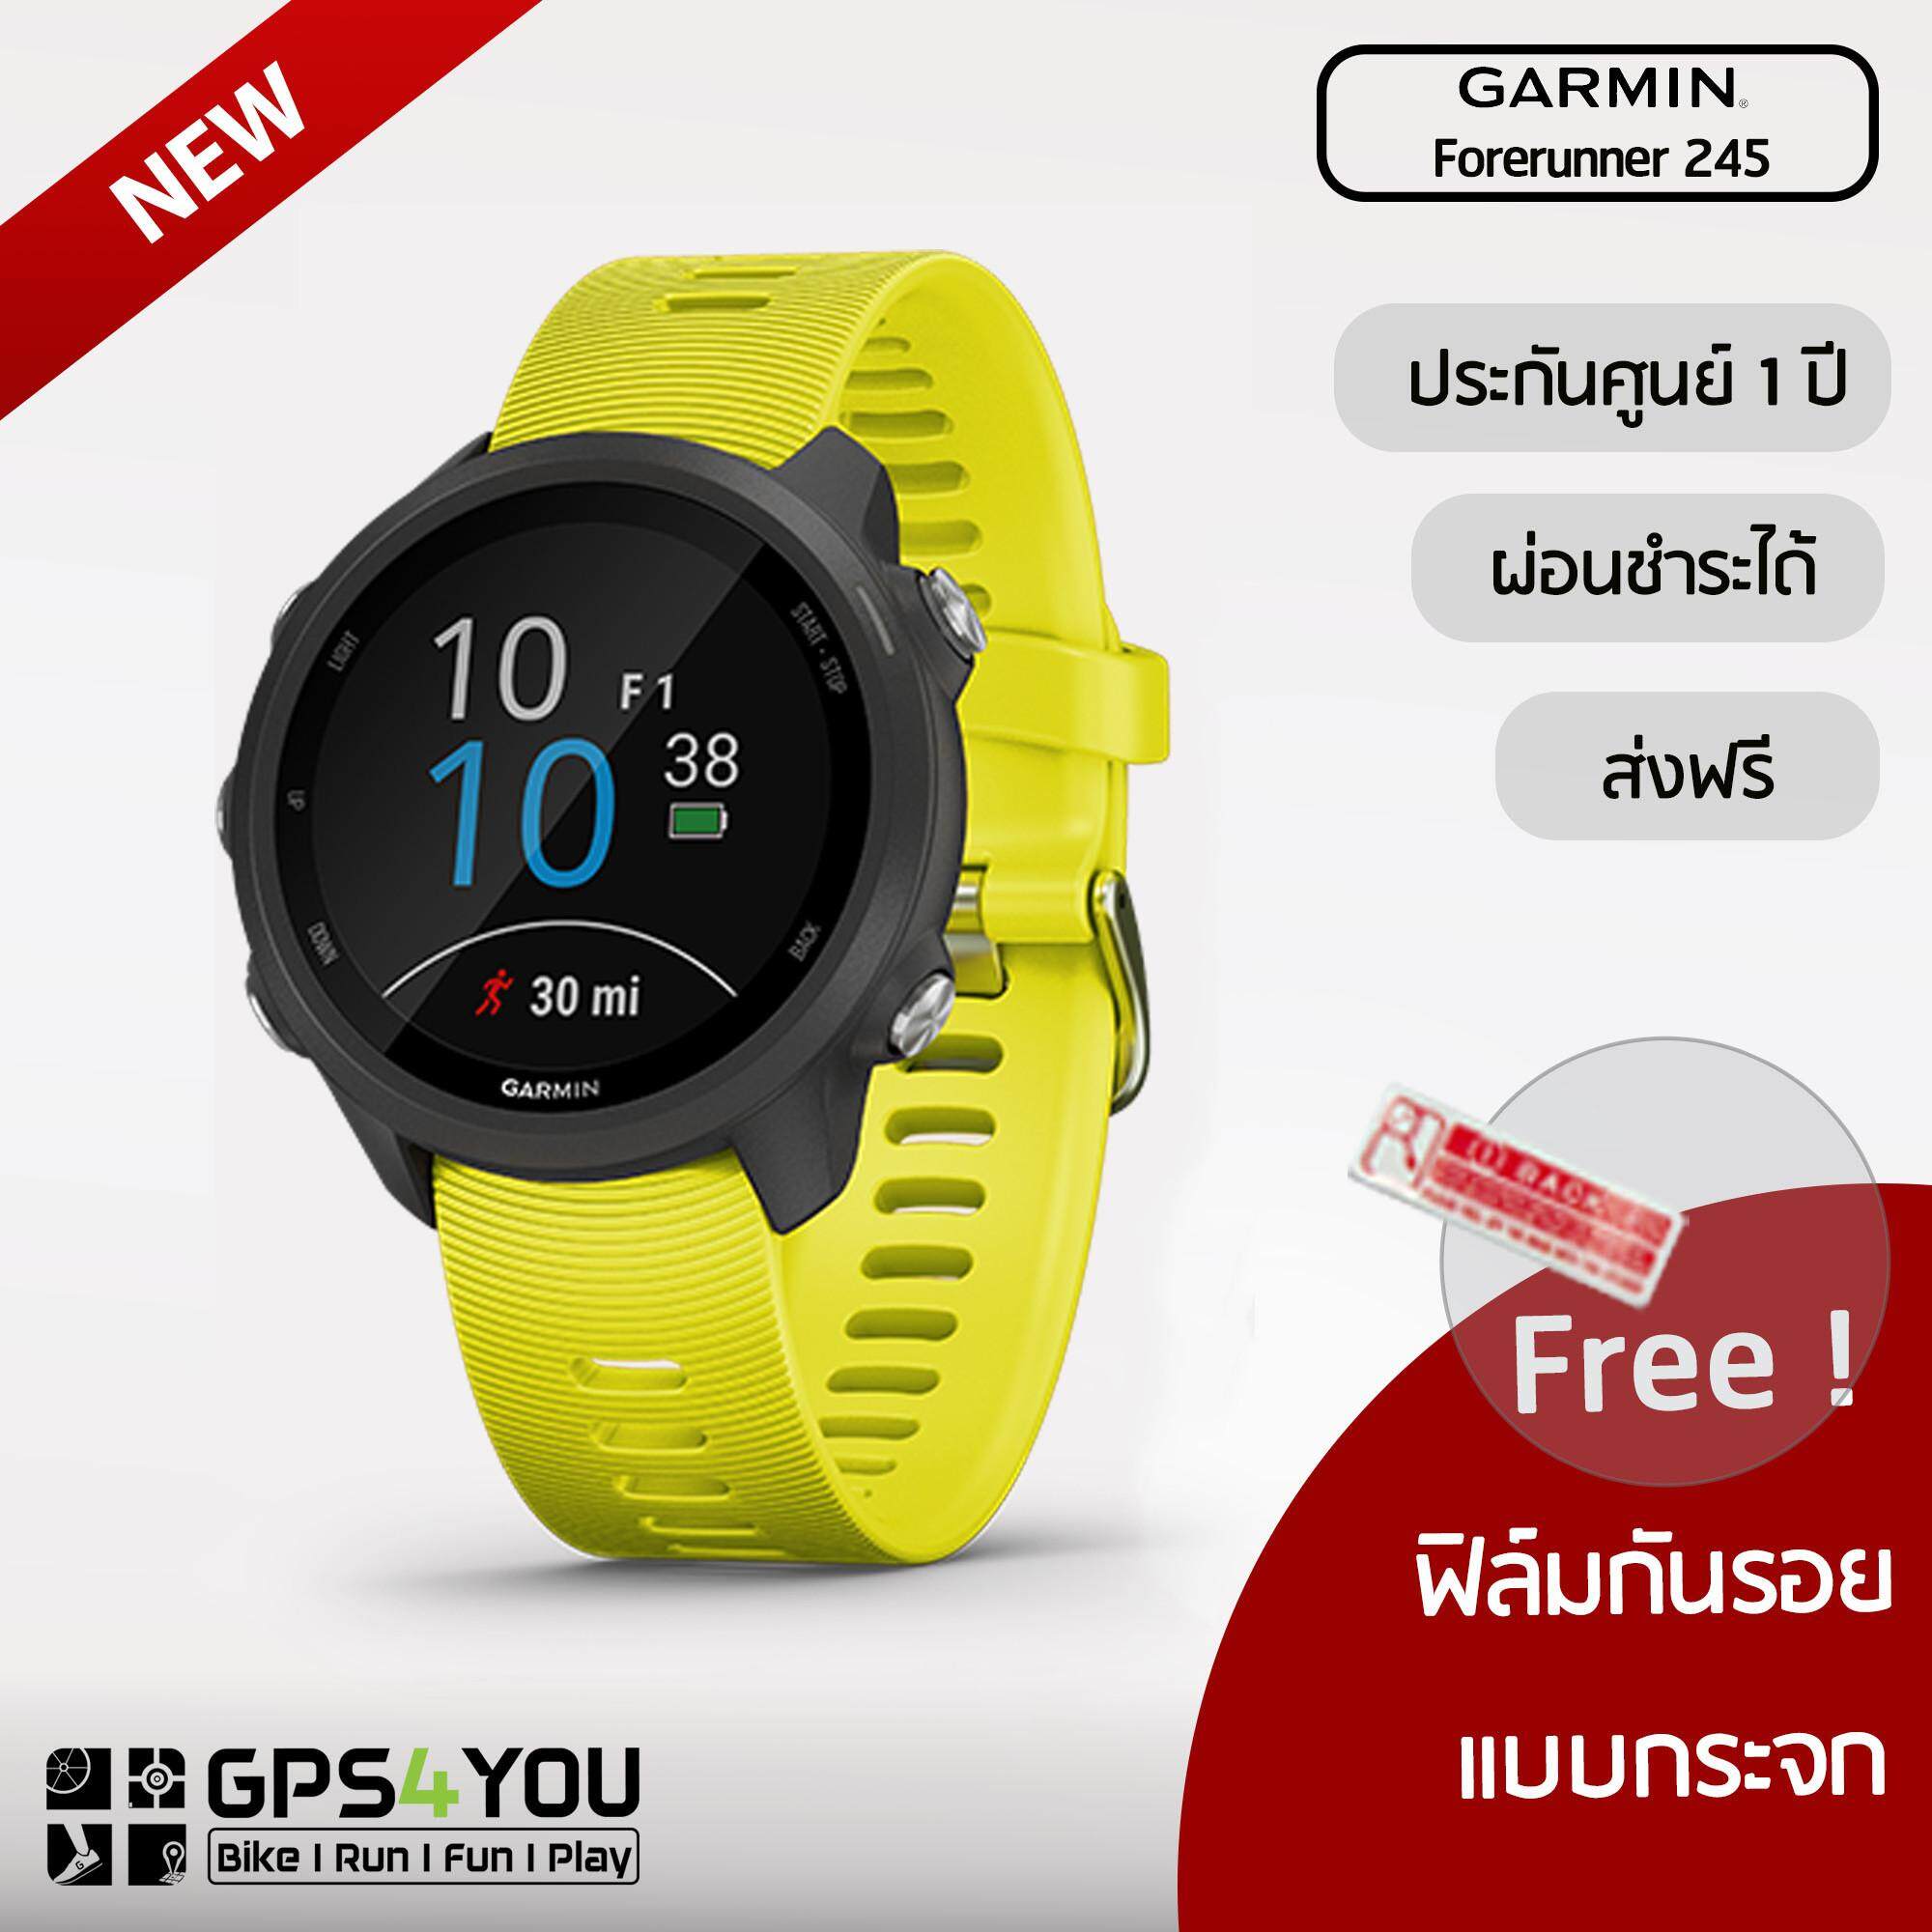 ยี่ห้อนี้ดีไหม  ราชบุรี Garmin Forerunner 245 (Yellow) นาฬิกาวิ่งระบบ GPS พร้อมคุณสมบัติการฝึกขั้นสูง (สีเขียวมะนาว)